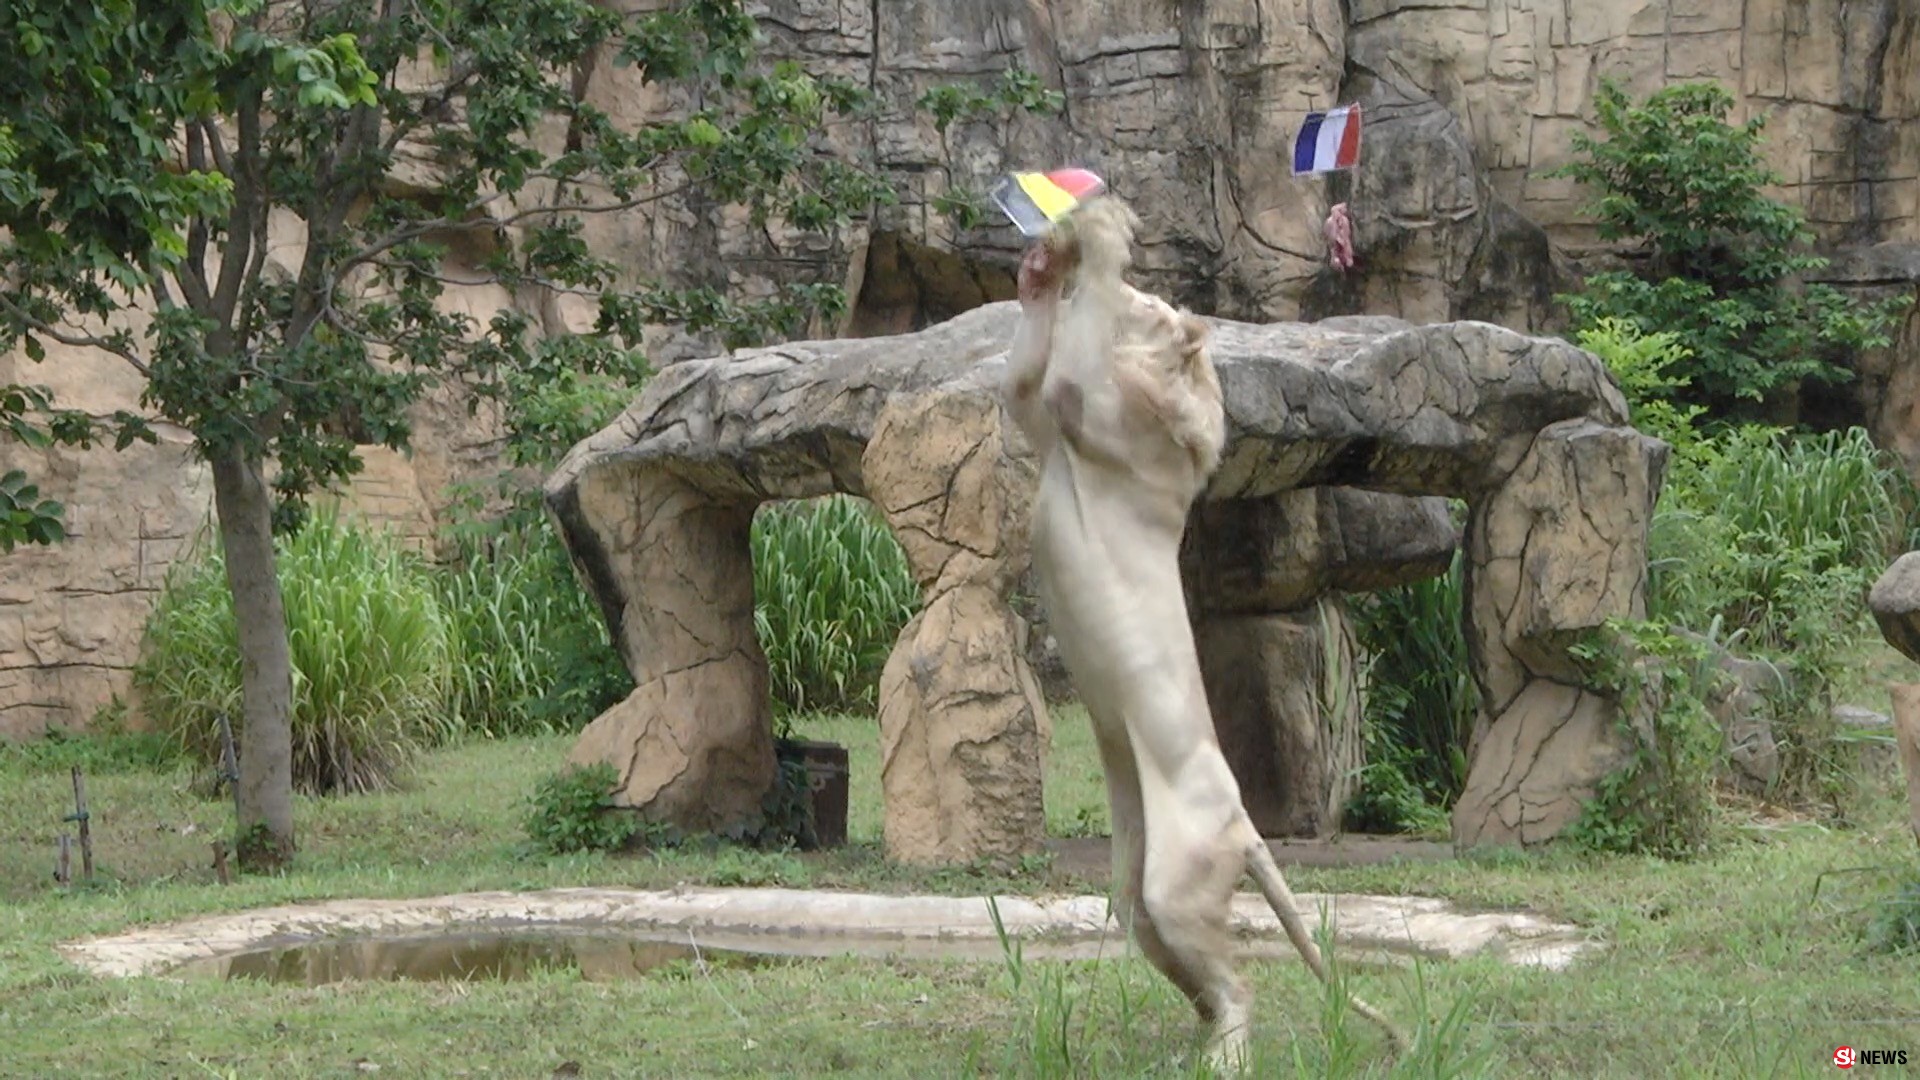 ฟันธงเบลเยี่ยม! “เจ้าบอย” สิงโตขาวตะปบชิ้นเนื้อทายทีมชาติเบลเยี่ยมเข้าชิงบอลโลก